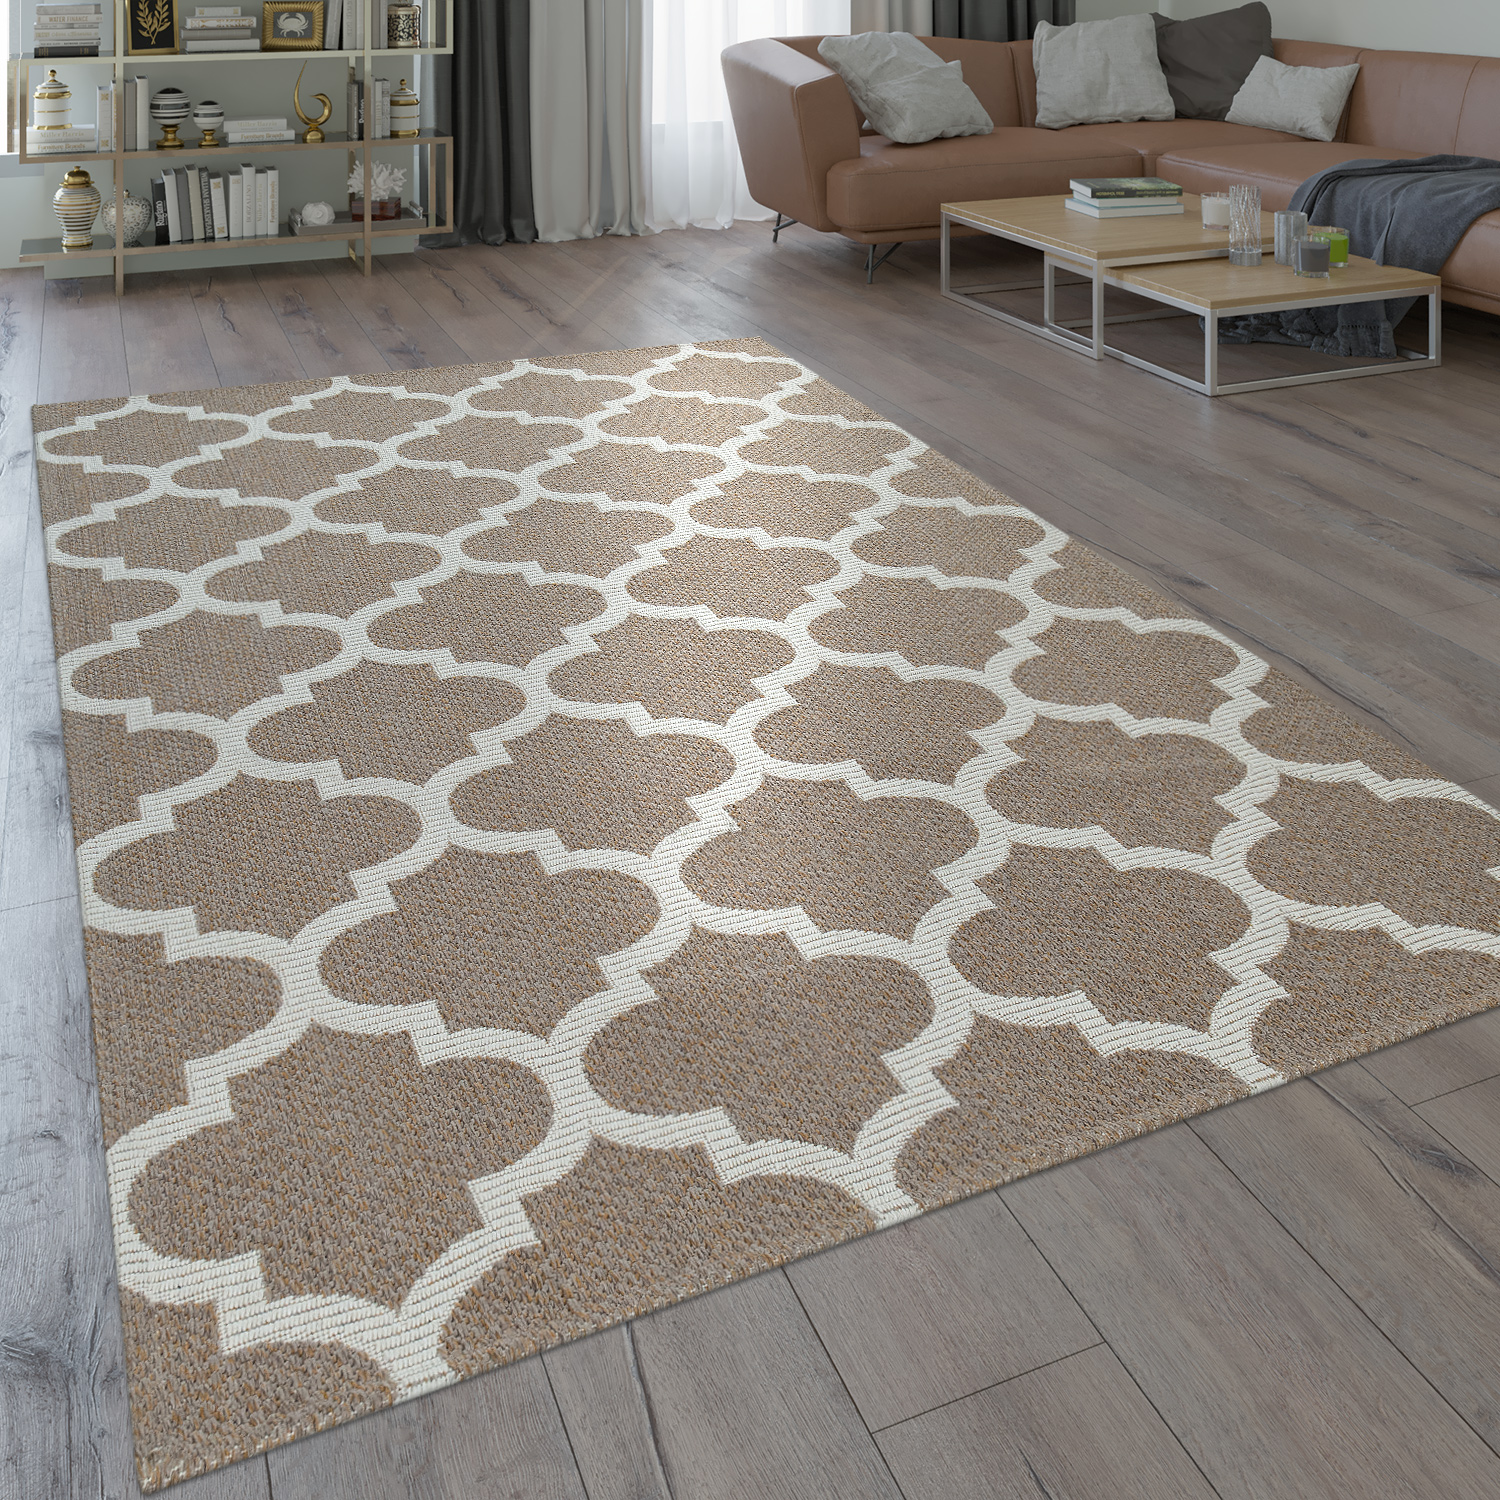 Teppich Marokkanisches Muster Ornamente Muster Teppiche Braun Beige 160x230cm 